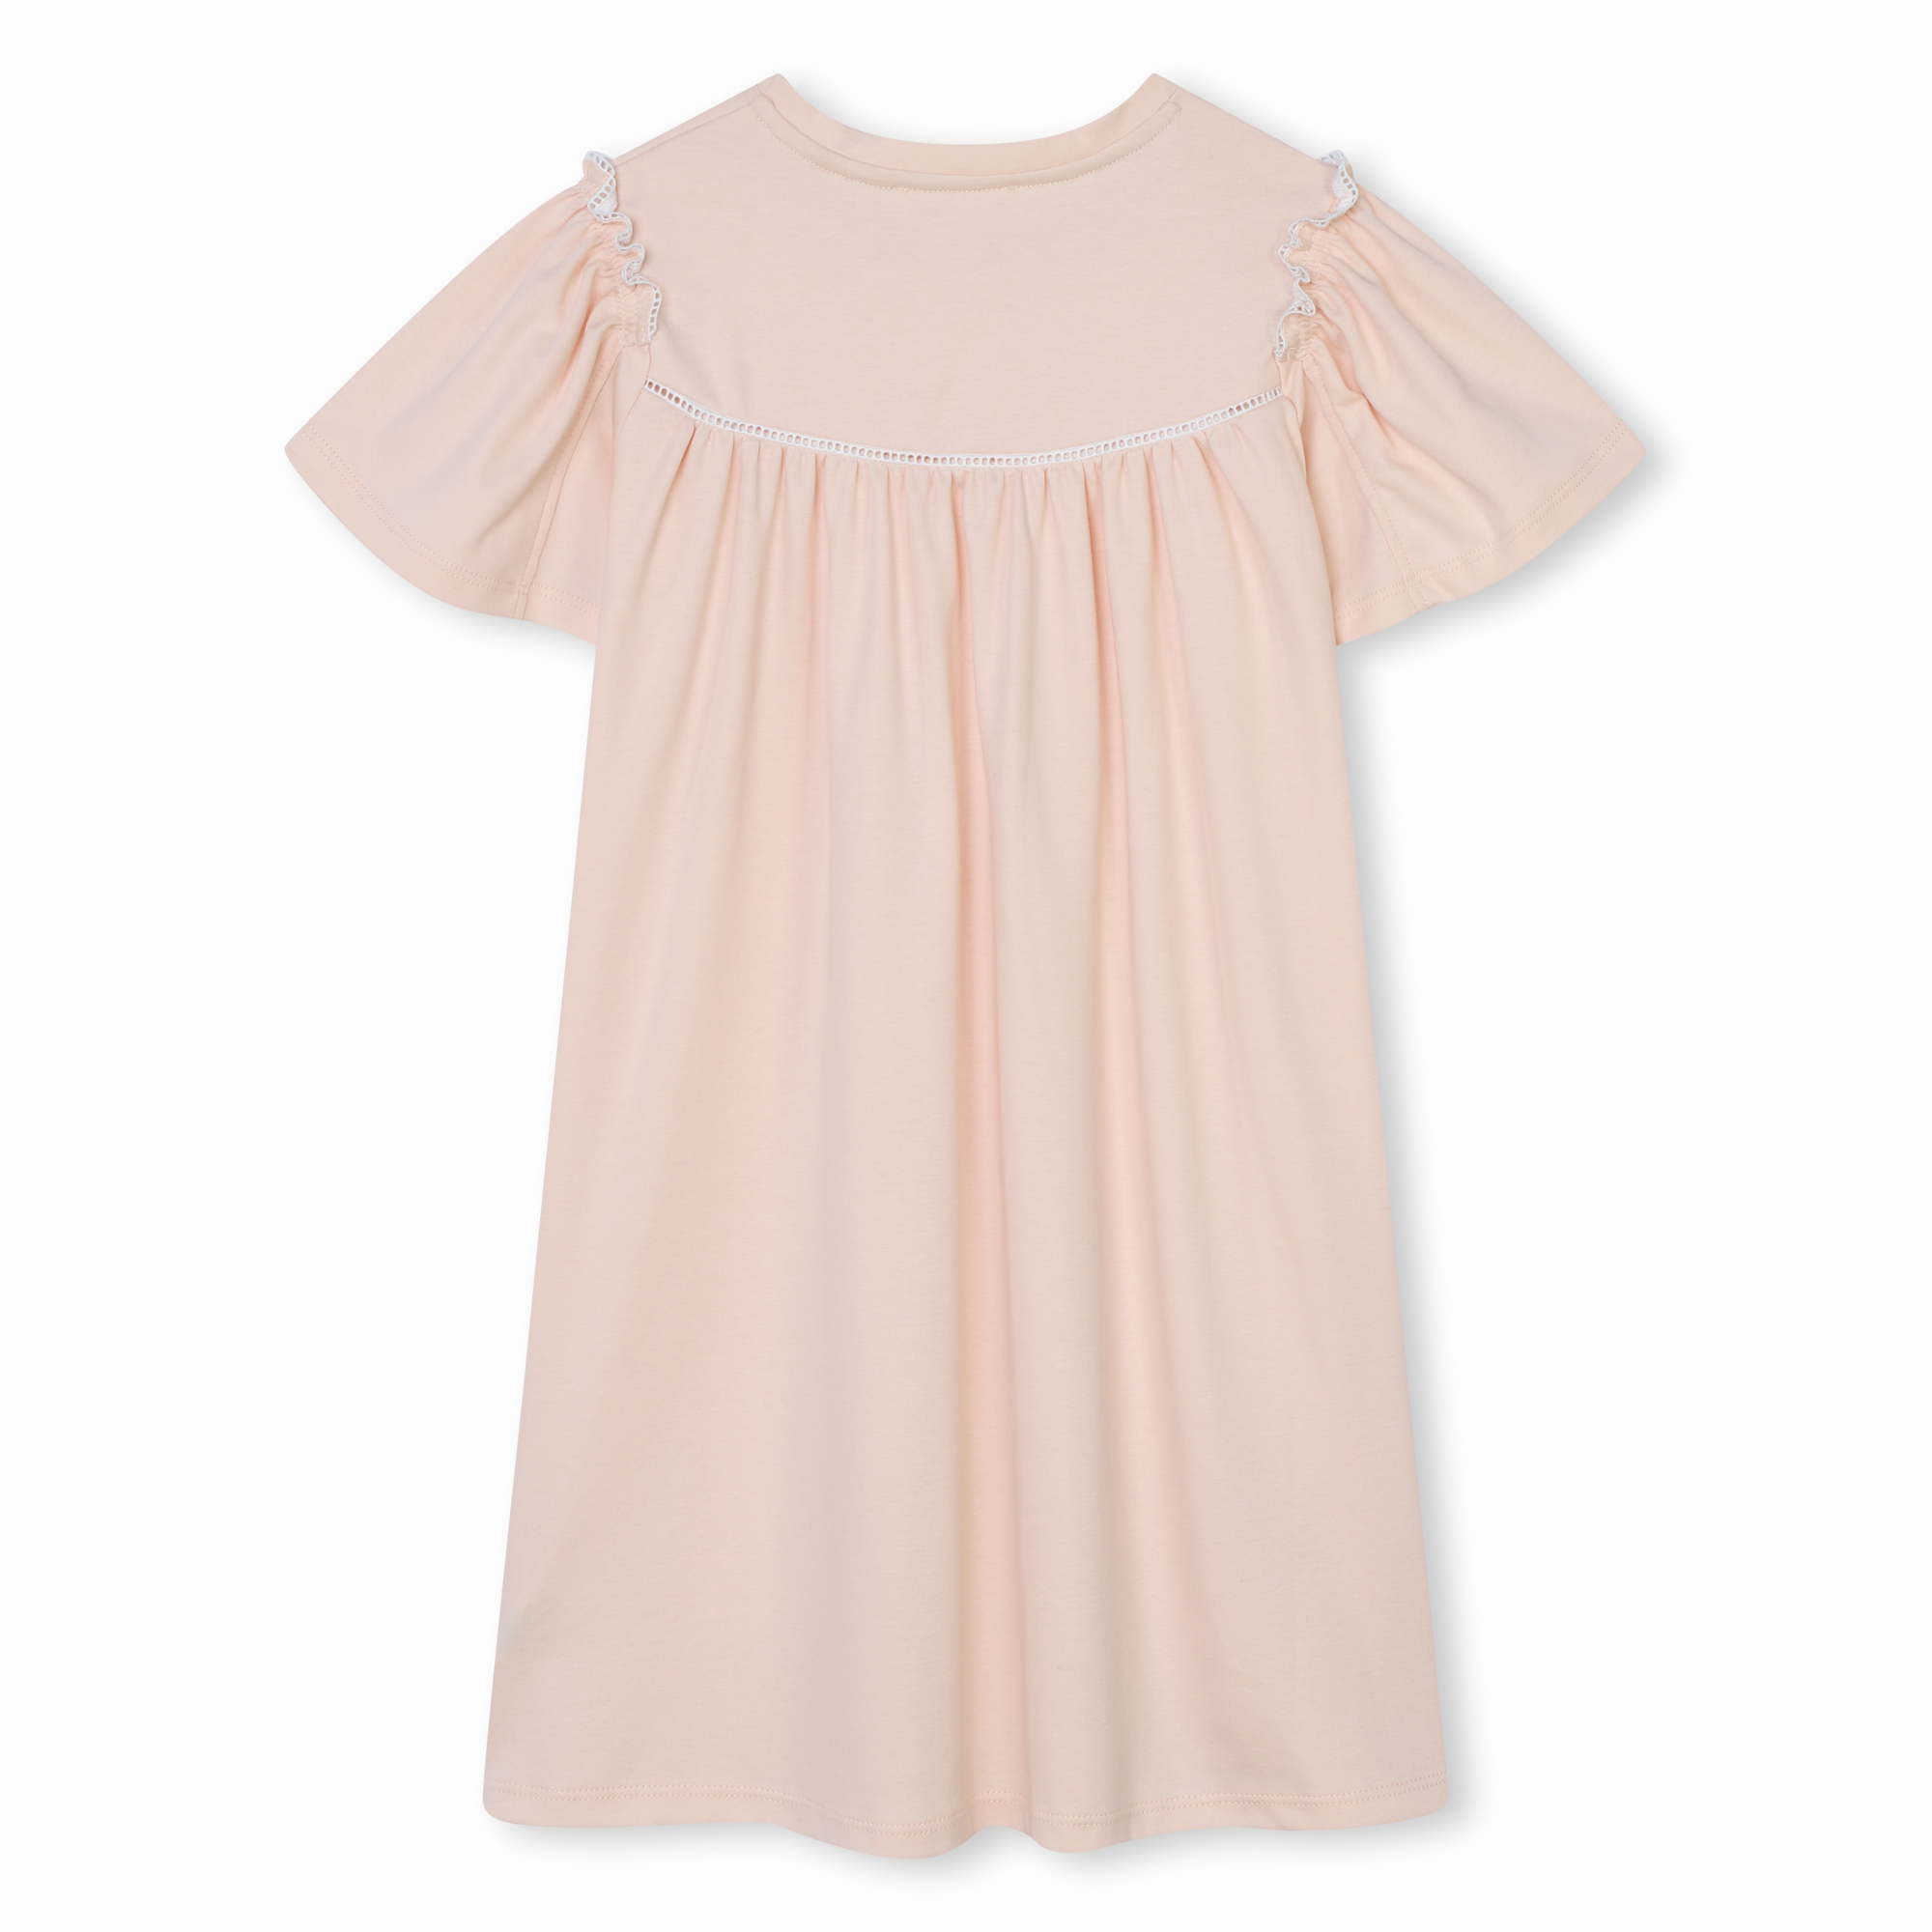 Short-sleeved cotton dress CHLOE for GIRL